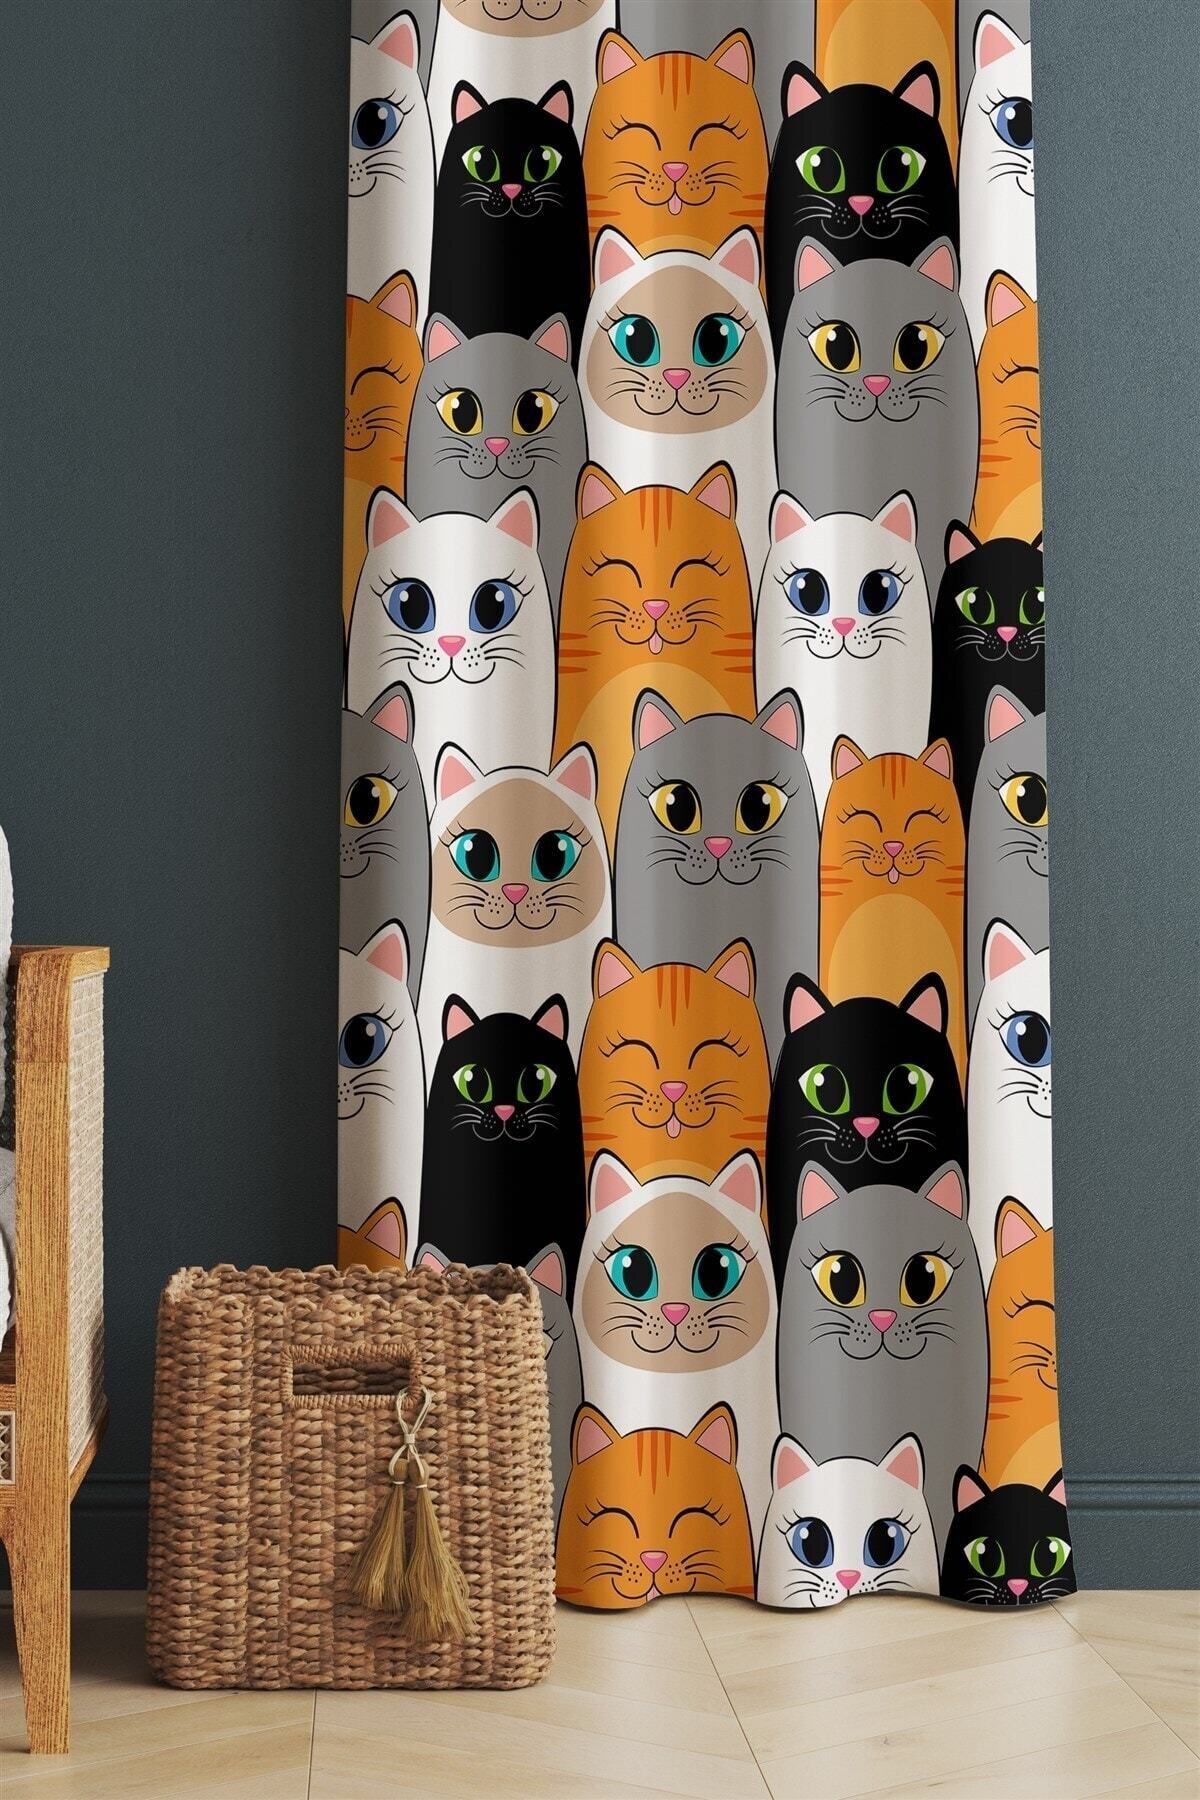 ERİZA Kids Çocuk&Bebek Odası Perde Koyu Renkli Kediler Desenli Fon Perde, Karartma Perde Sarı